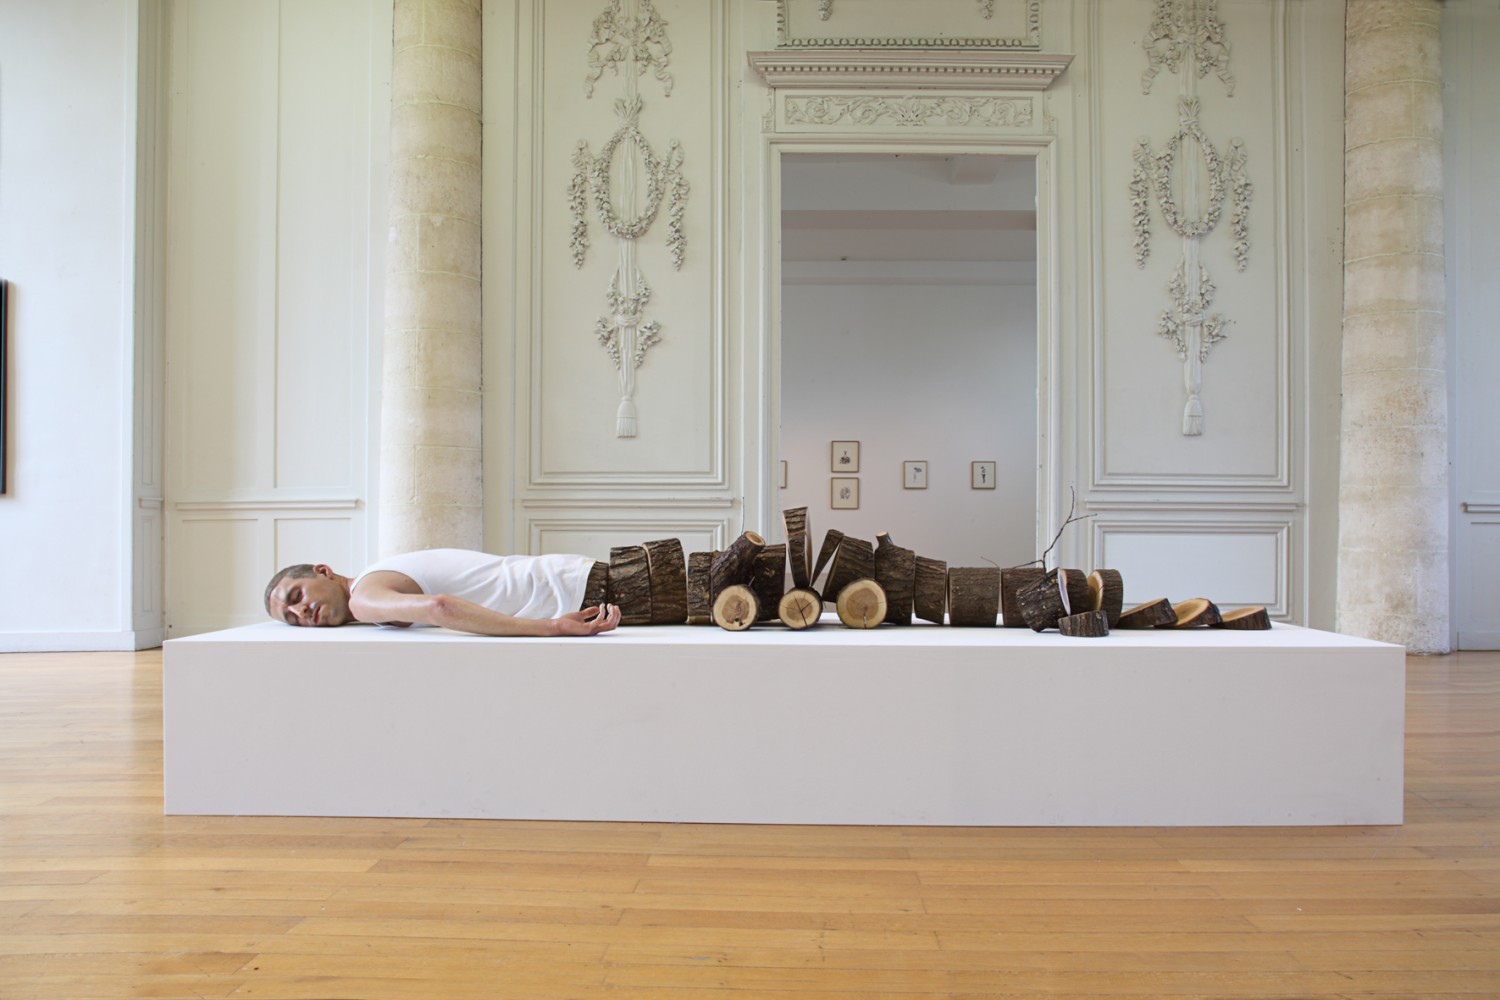 Fabien Mérelle – Sculpture : Tronçonné – 2012 – Silicone, hair, fabric, wood / 2 mètres